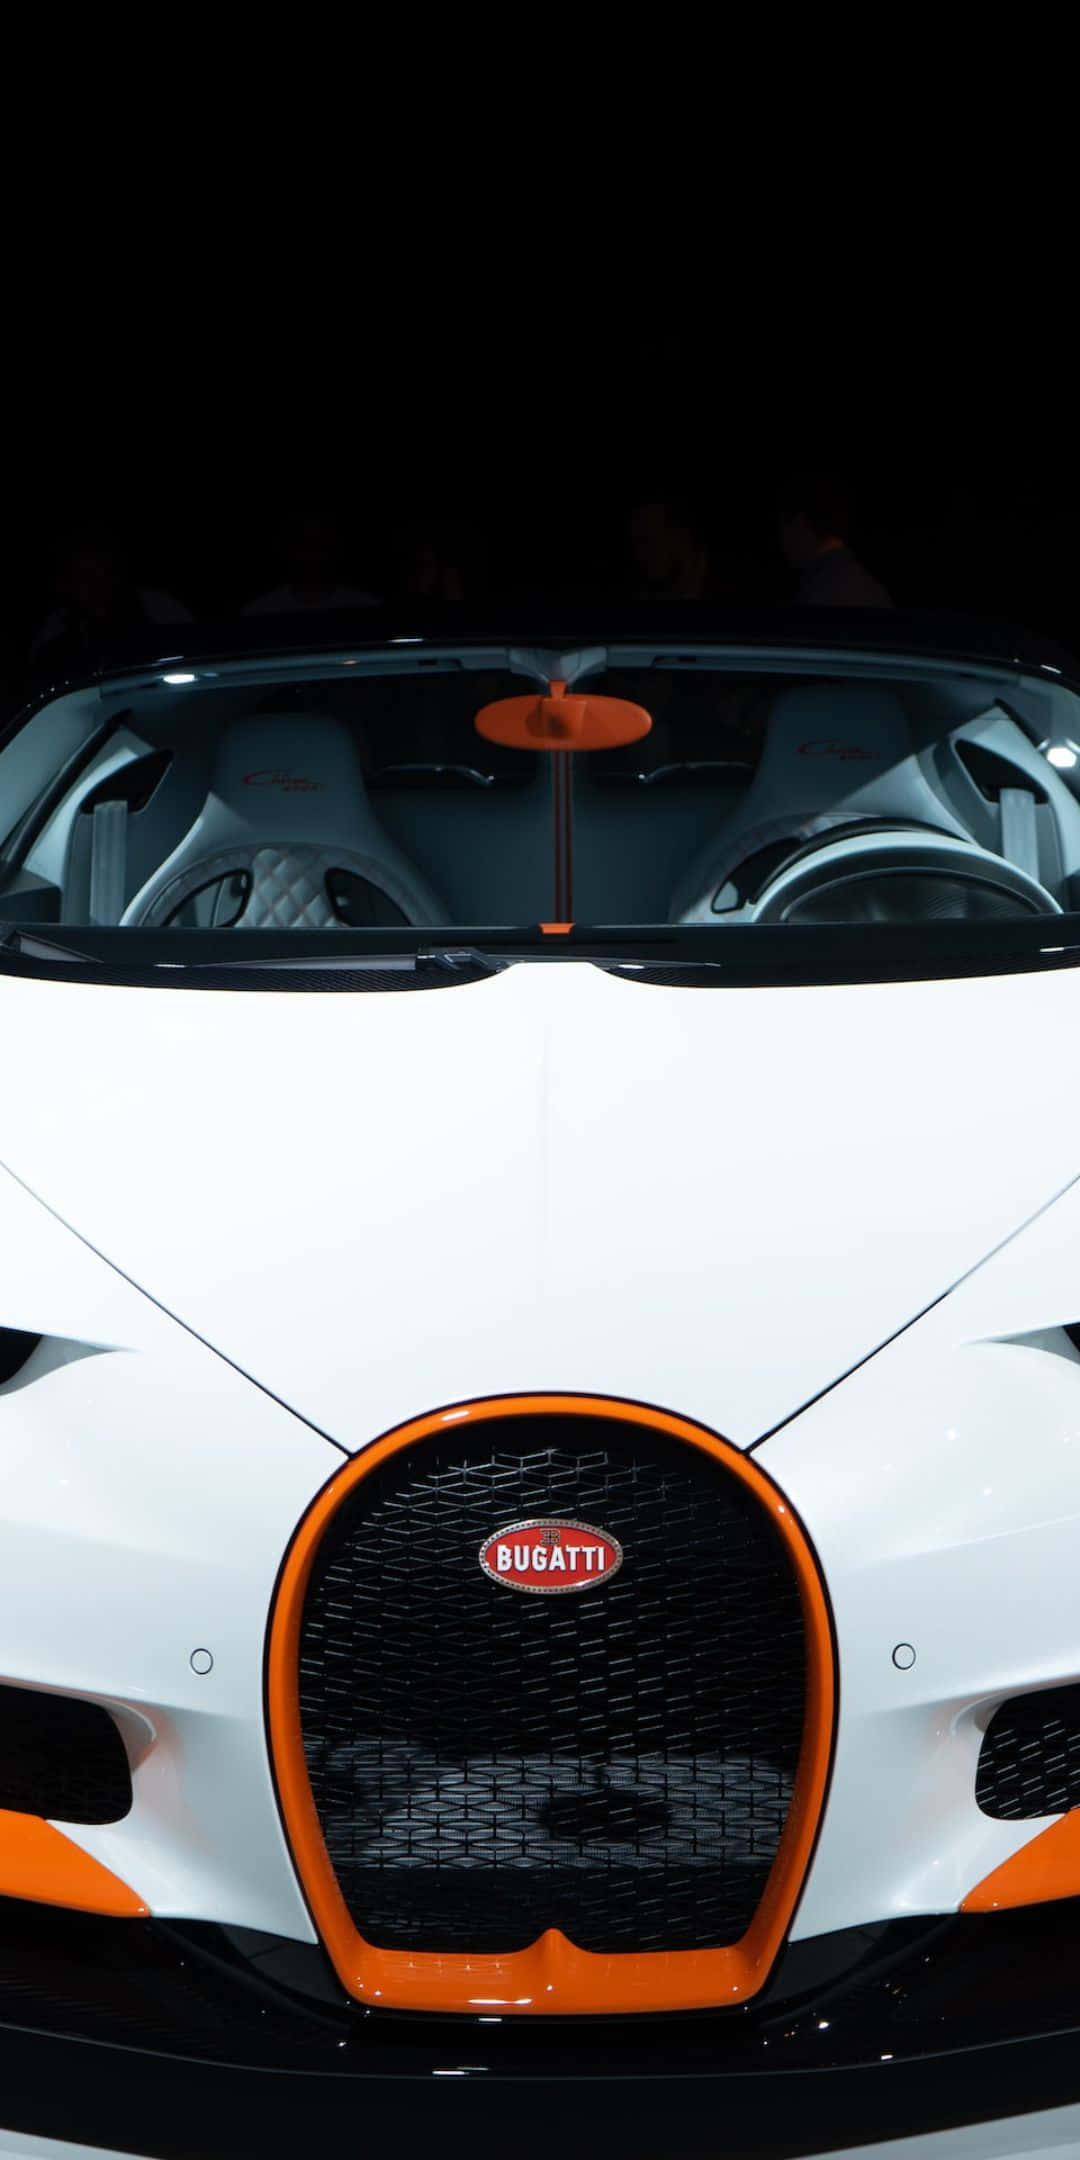 Fondode Pantalla De Bugatti Pixel 3 Con Detalles Blancos Y Naranjas.